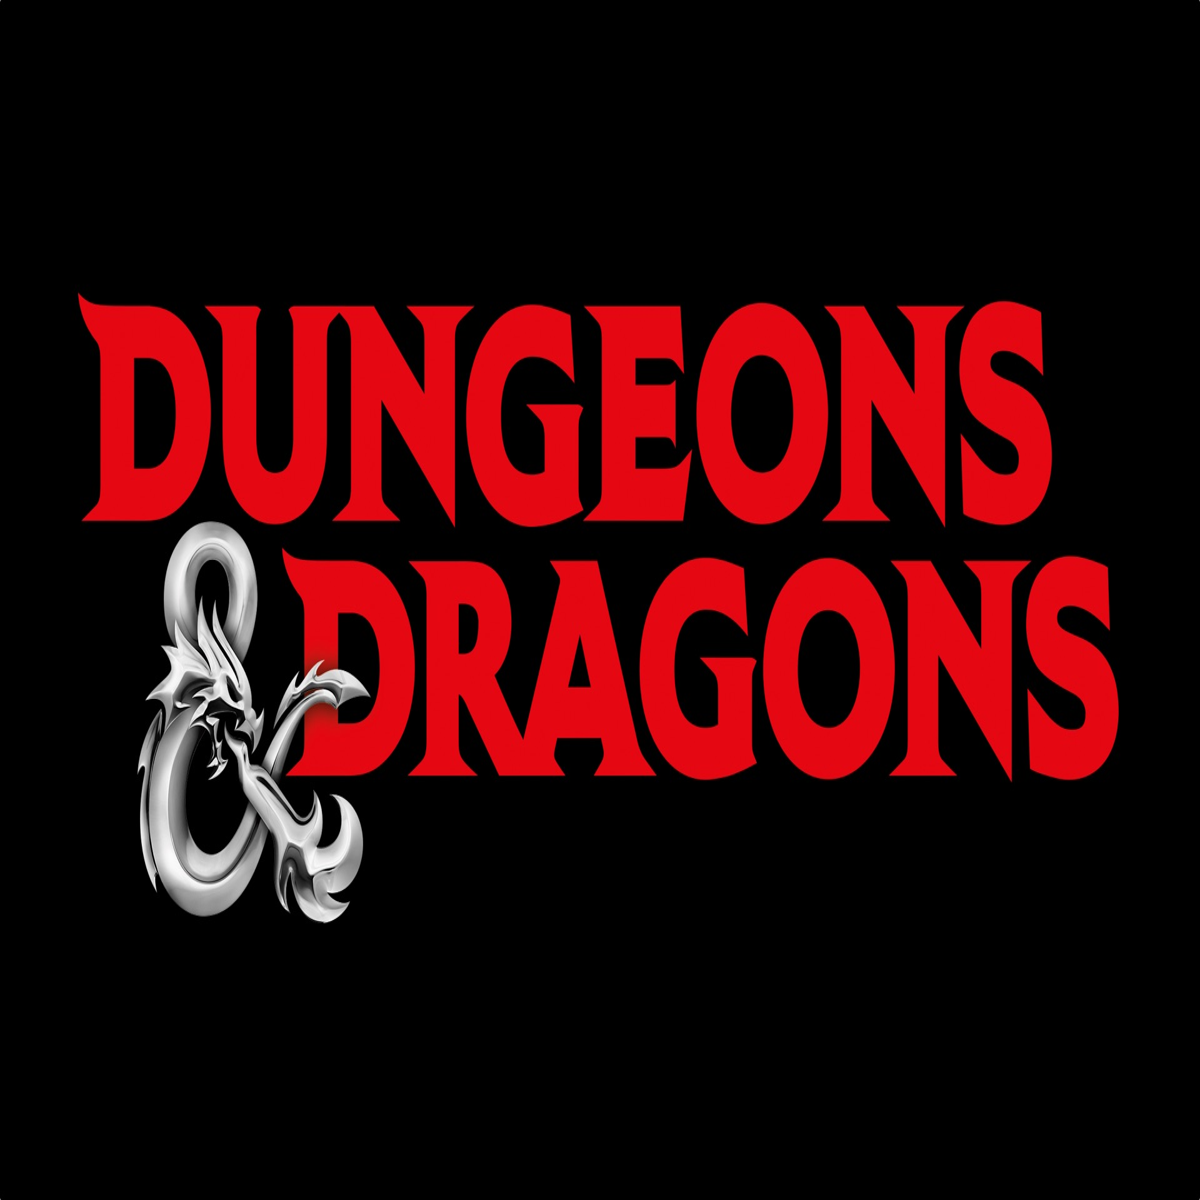 Dungeons & Dragons OGL scandal: Hasbro delays changes